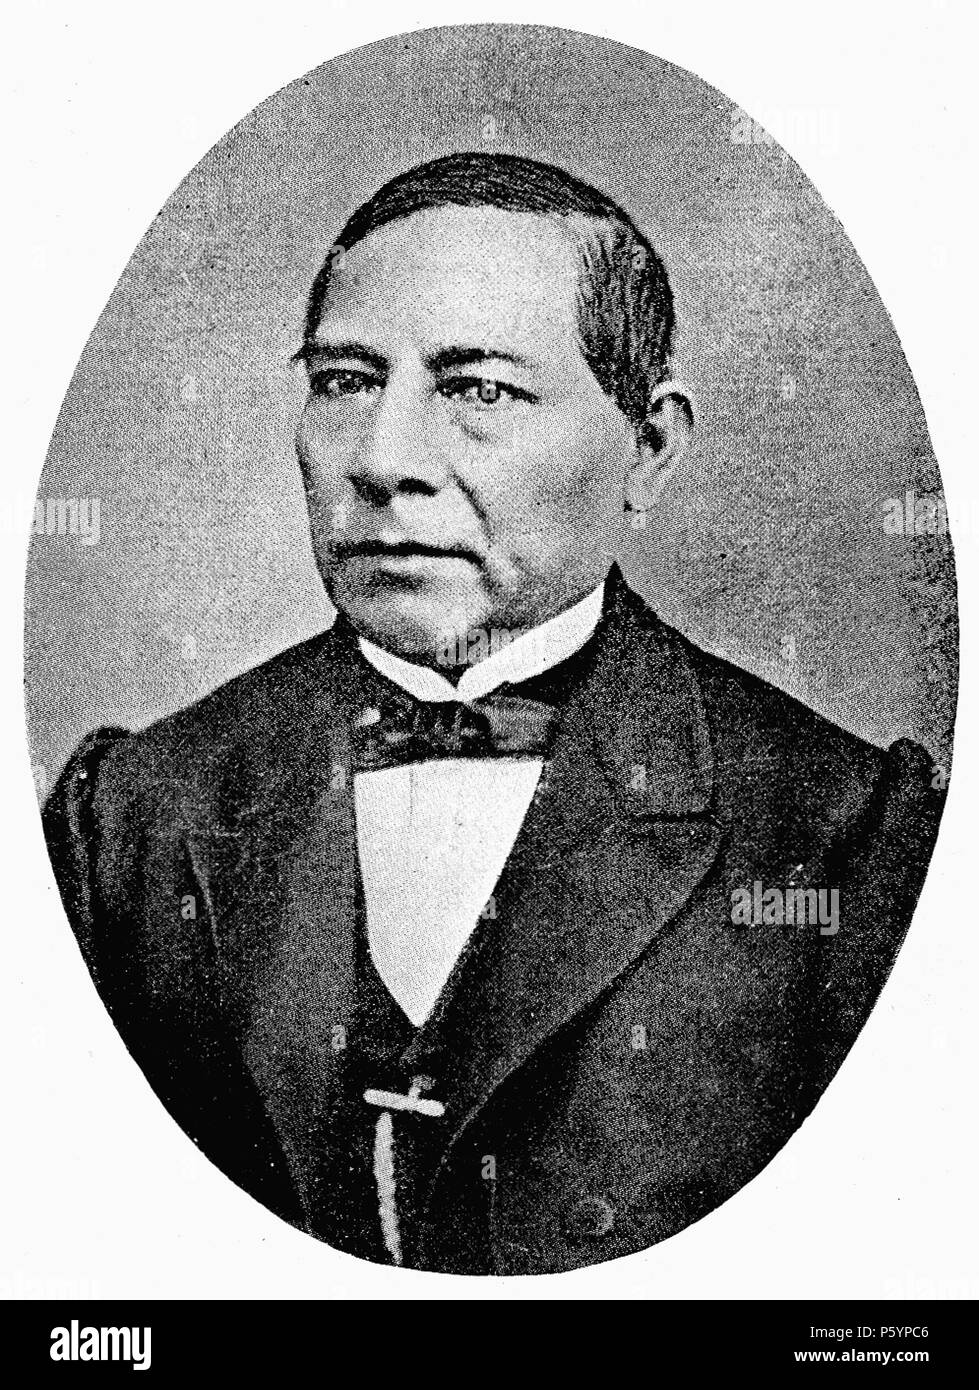 Benito juarez